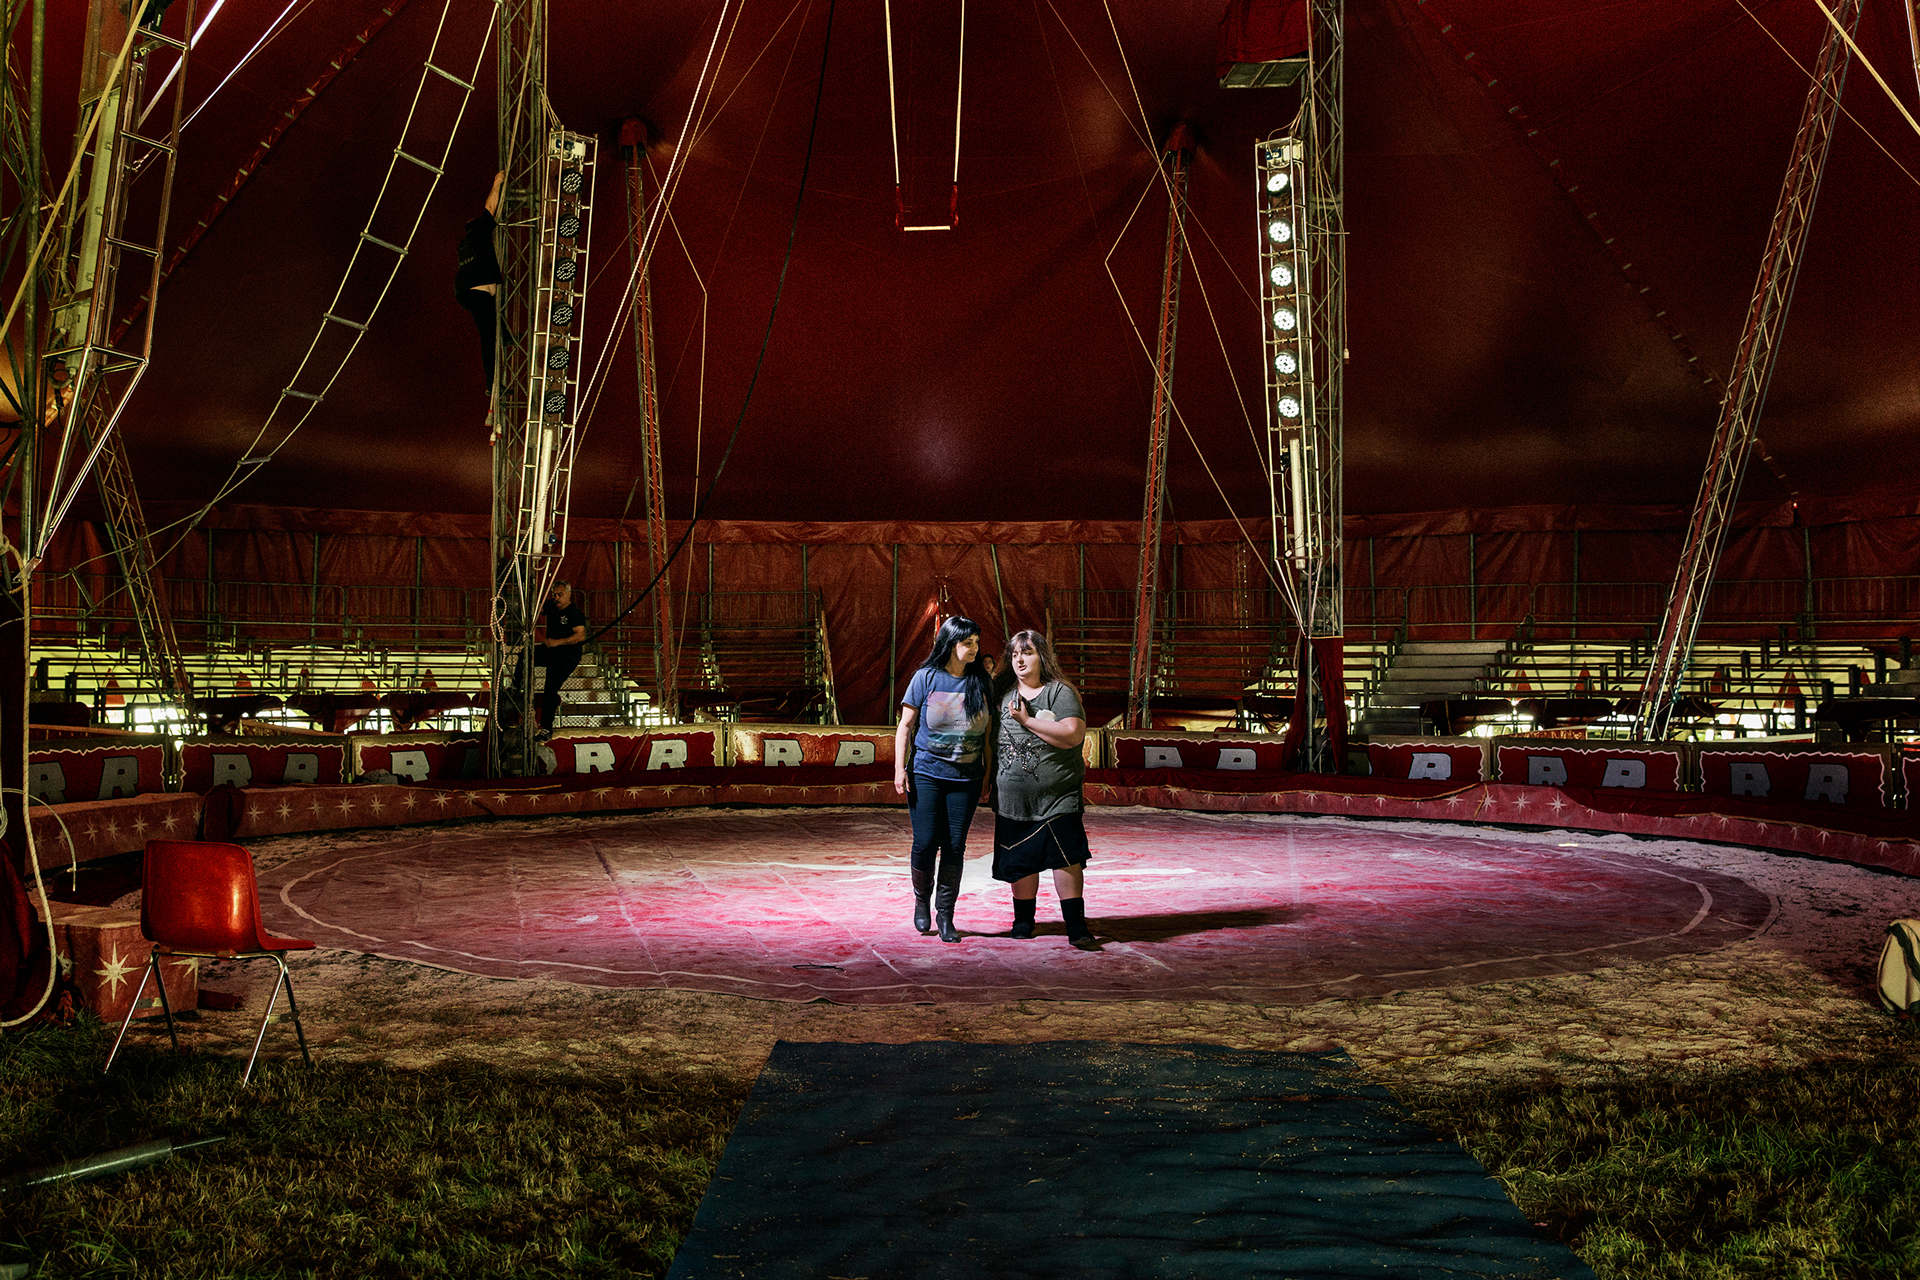 Dainaly con la mamma Daniela nello chapiteau, termine con il quale i circensi indicano il tendone del circo.